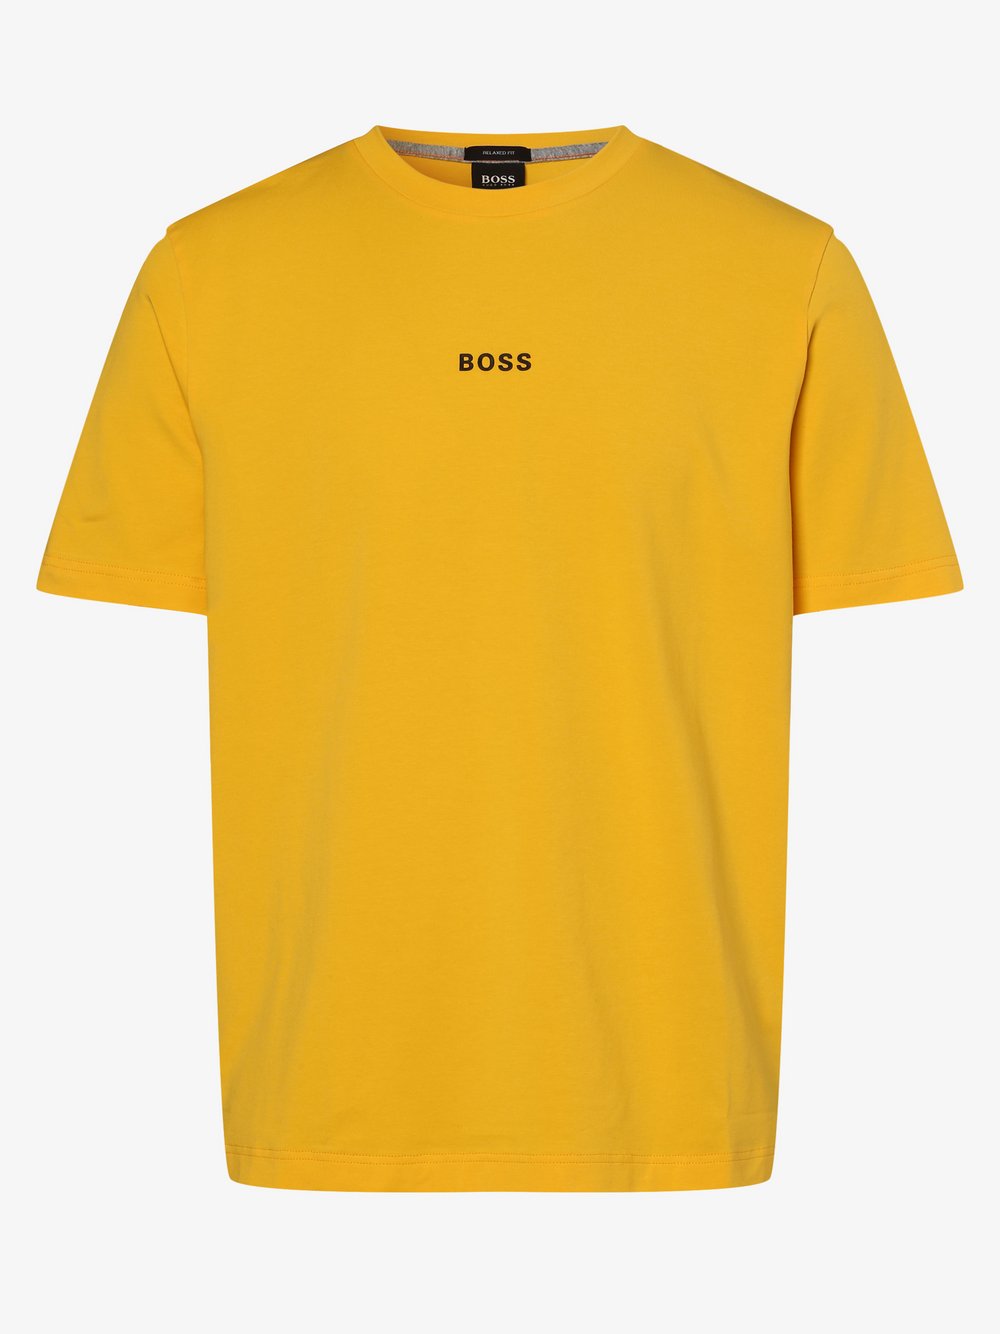 BOSS Casual - T-shirt męski – TChup 1, żółty